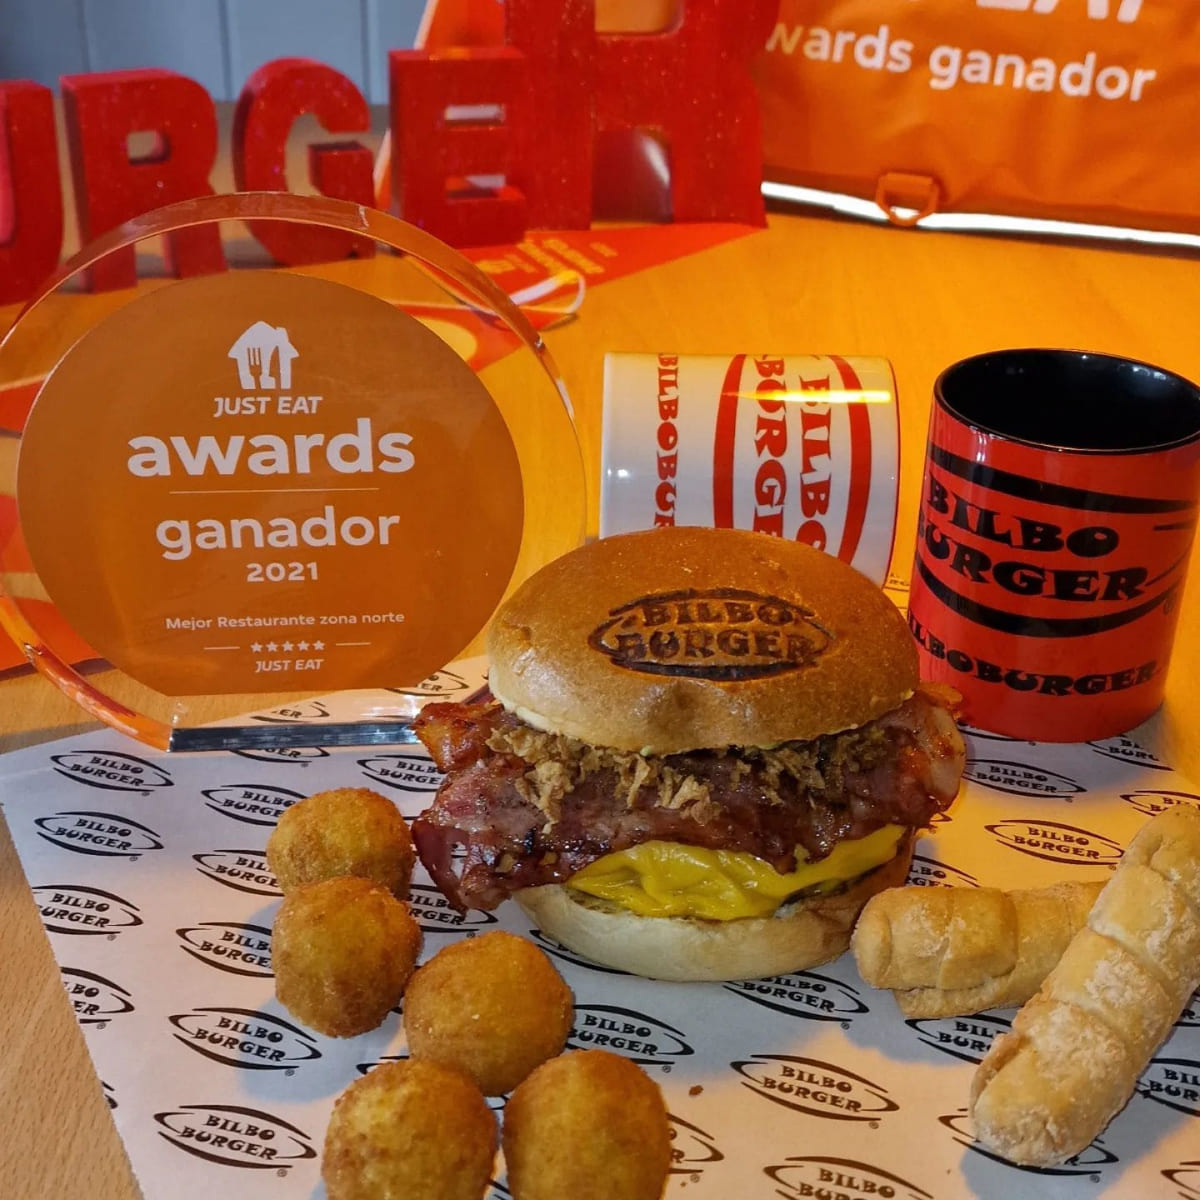 Galardón de Just Eat Awards 2021 mostrando a Bilboburger como ganador del Mejor Restaurante en la zona norte, junto a una hamburguesa, patatas y una taza con el logo